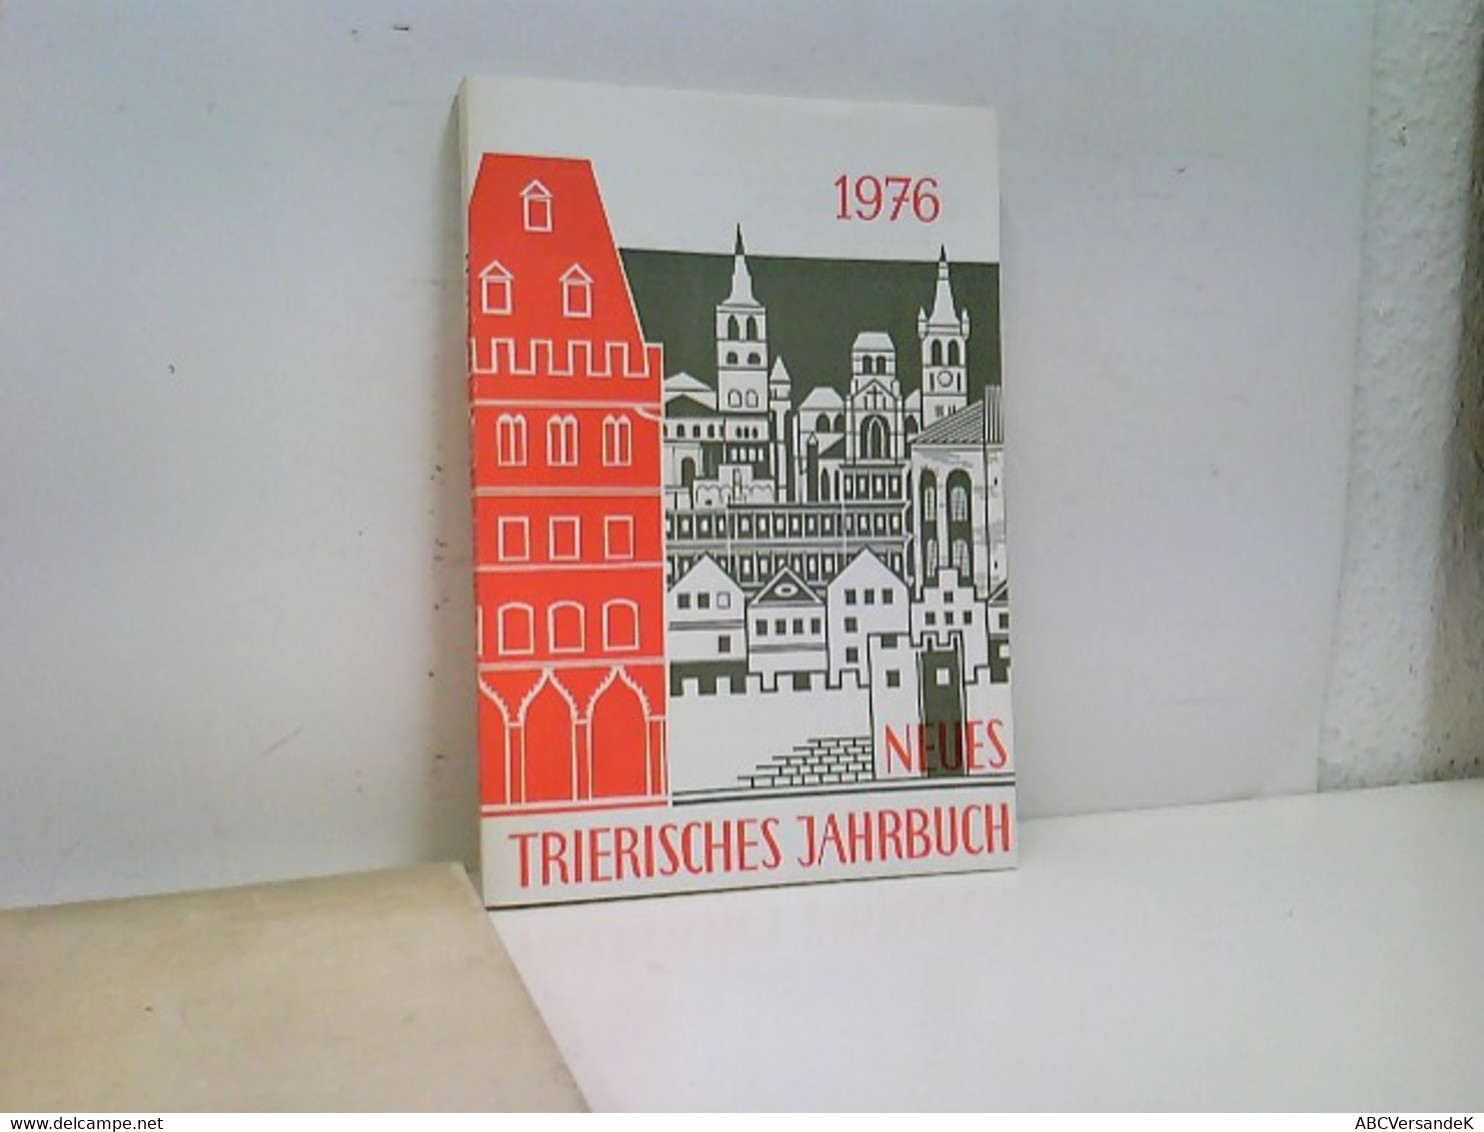 Neues Trierisches Jahrbuch 1976 - Deutschland Gesamt